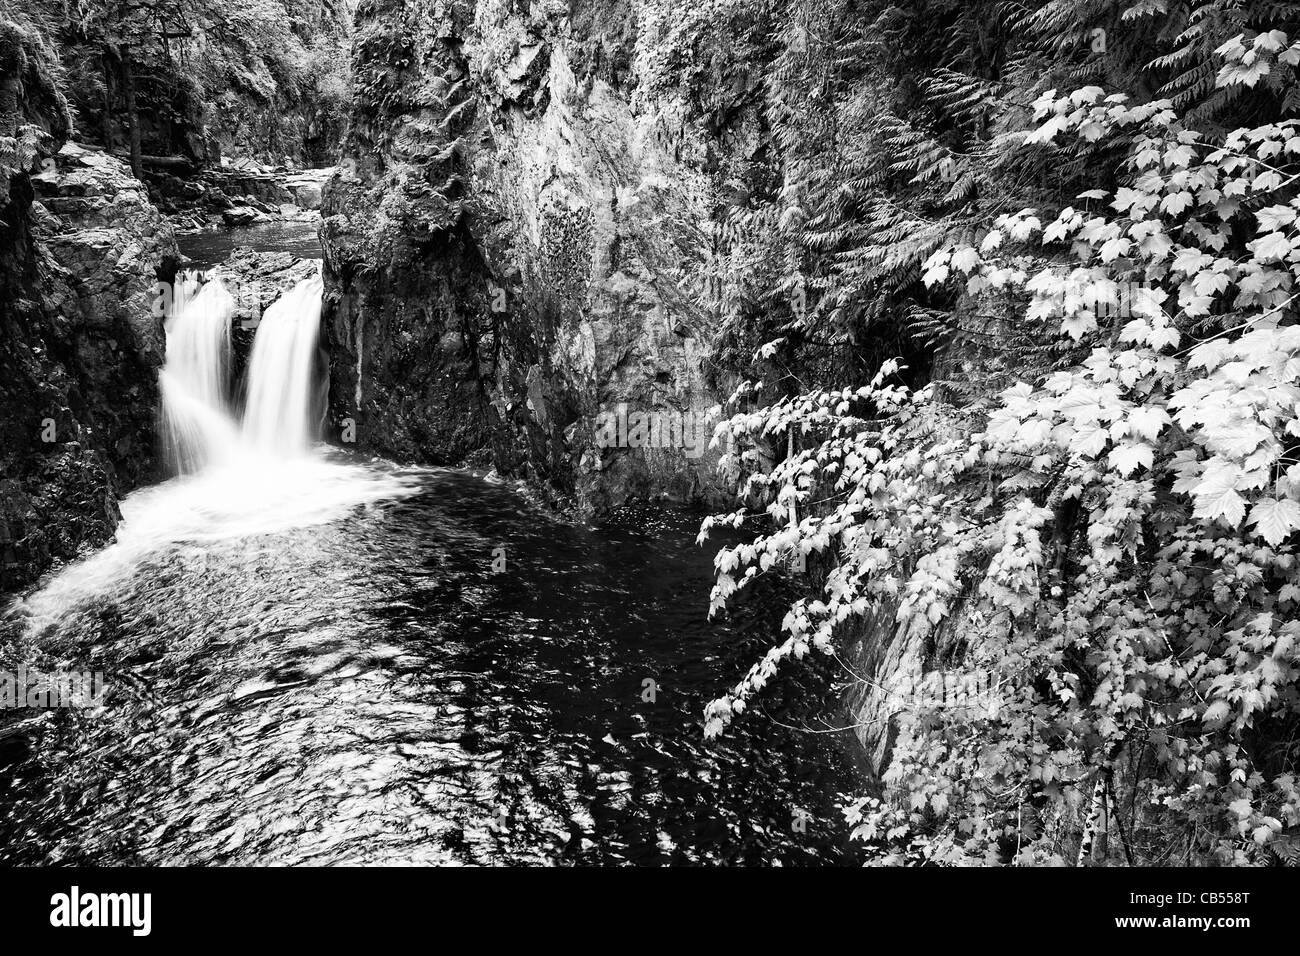 Englishman's Falls, près de Parksville sur l'île de Vancouver, Colombie-Britannique, Canada. Banque D'Images